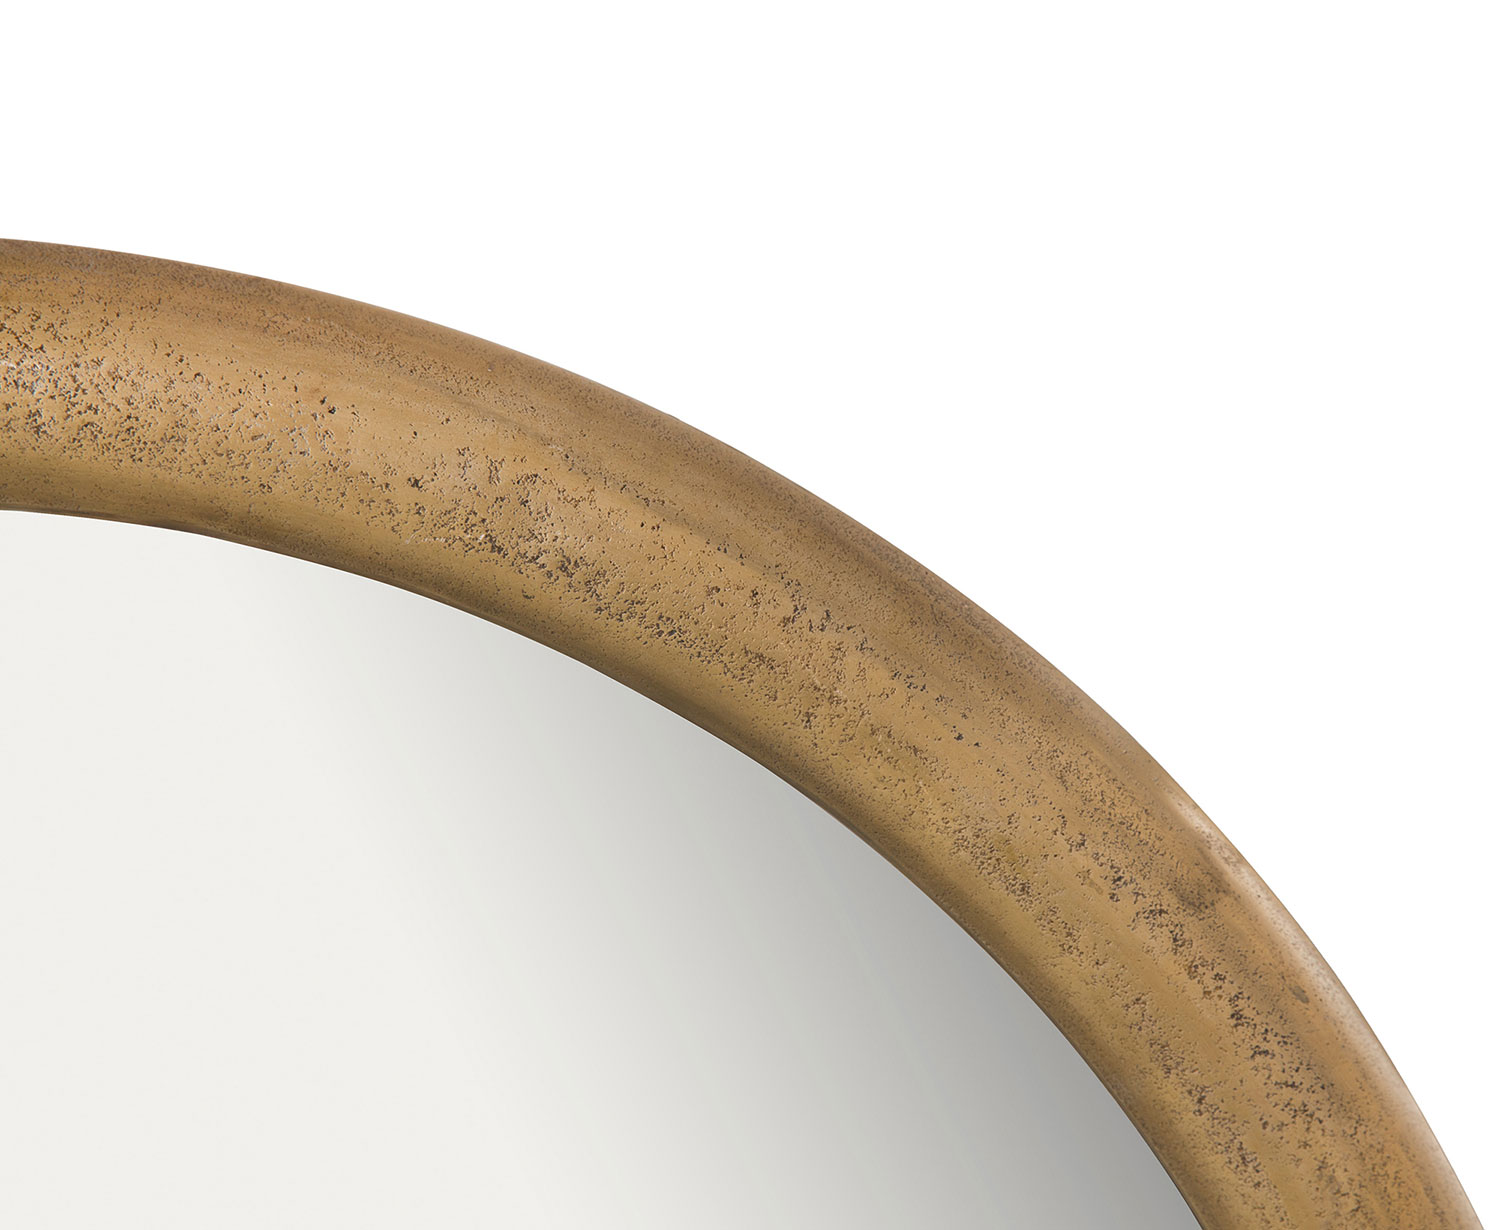 Ren-Wil Dendridge Round Mirror - Antique Brass